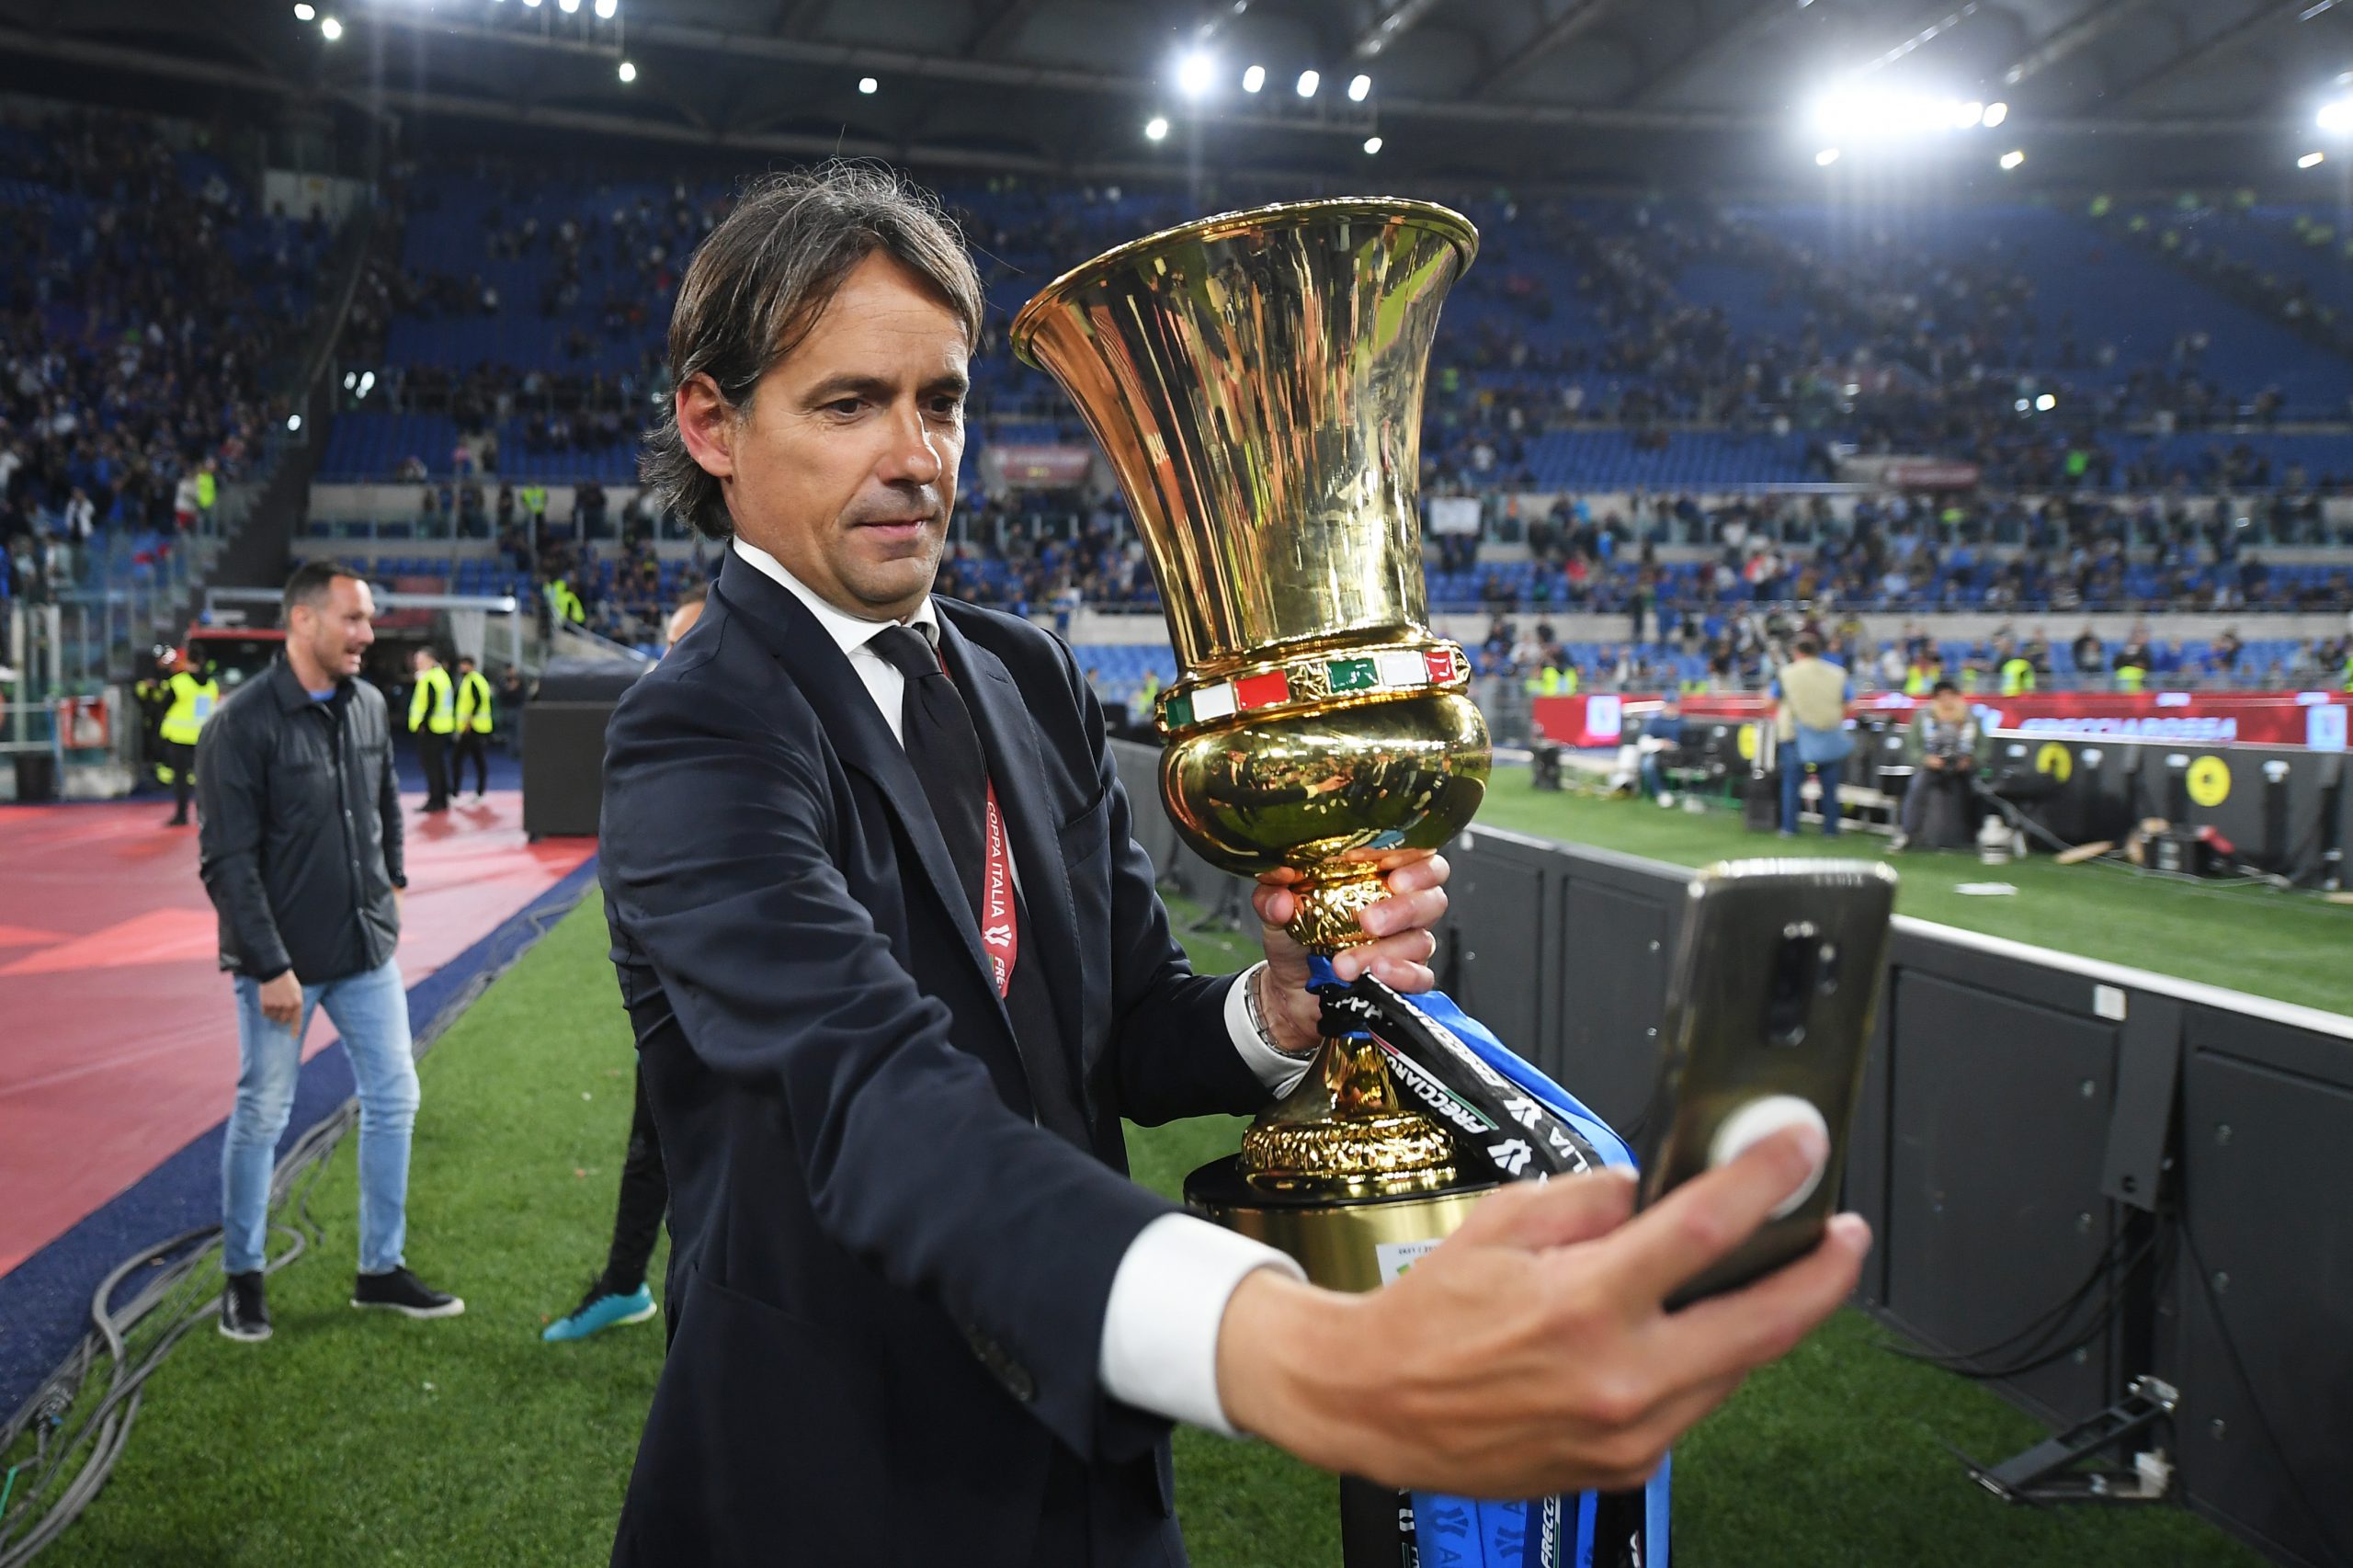 Coppa Italia, Inzaghi ha un conto in sospeso: obiettivo altra stella Inter!